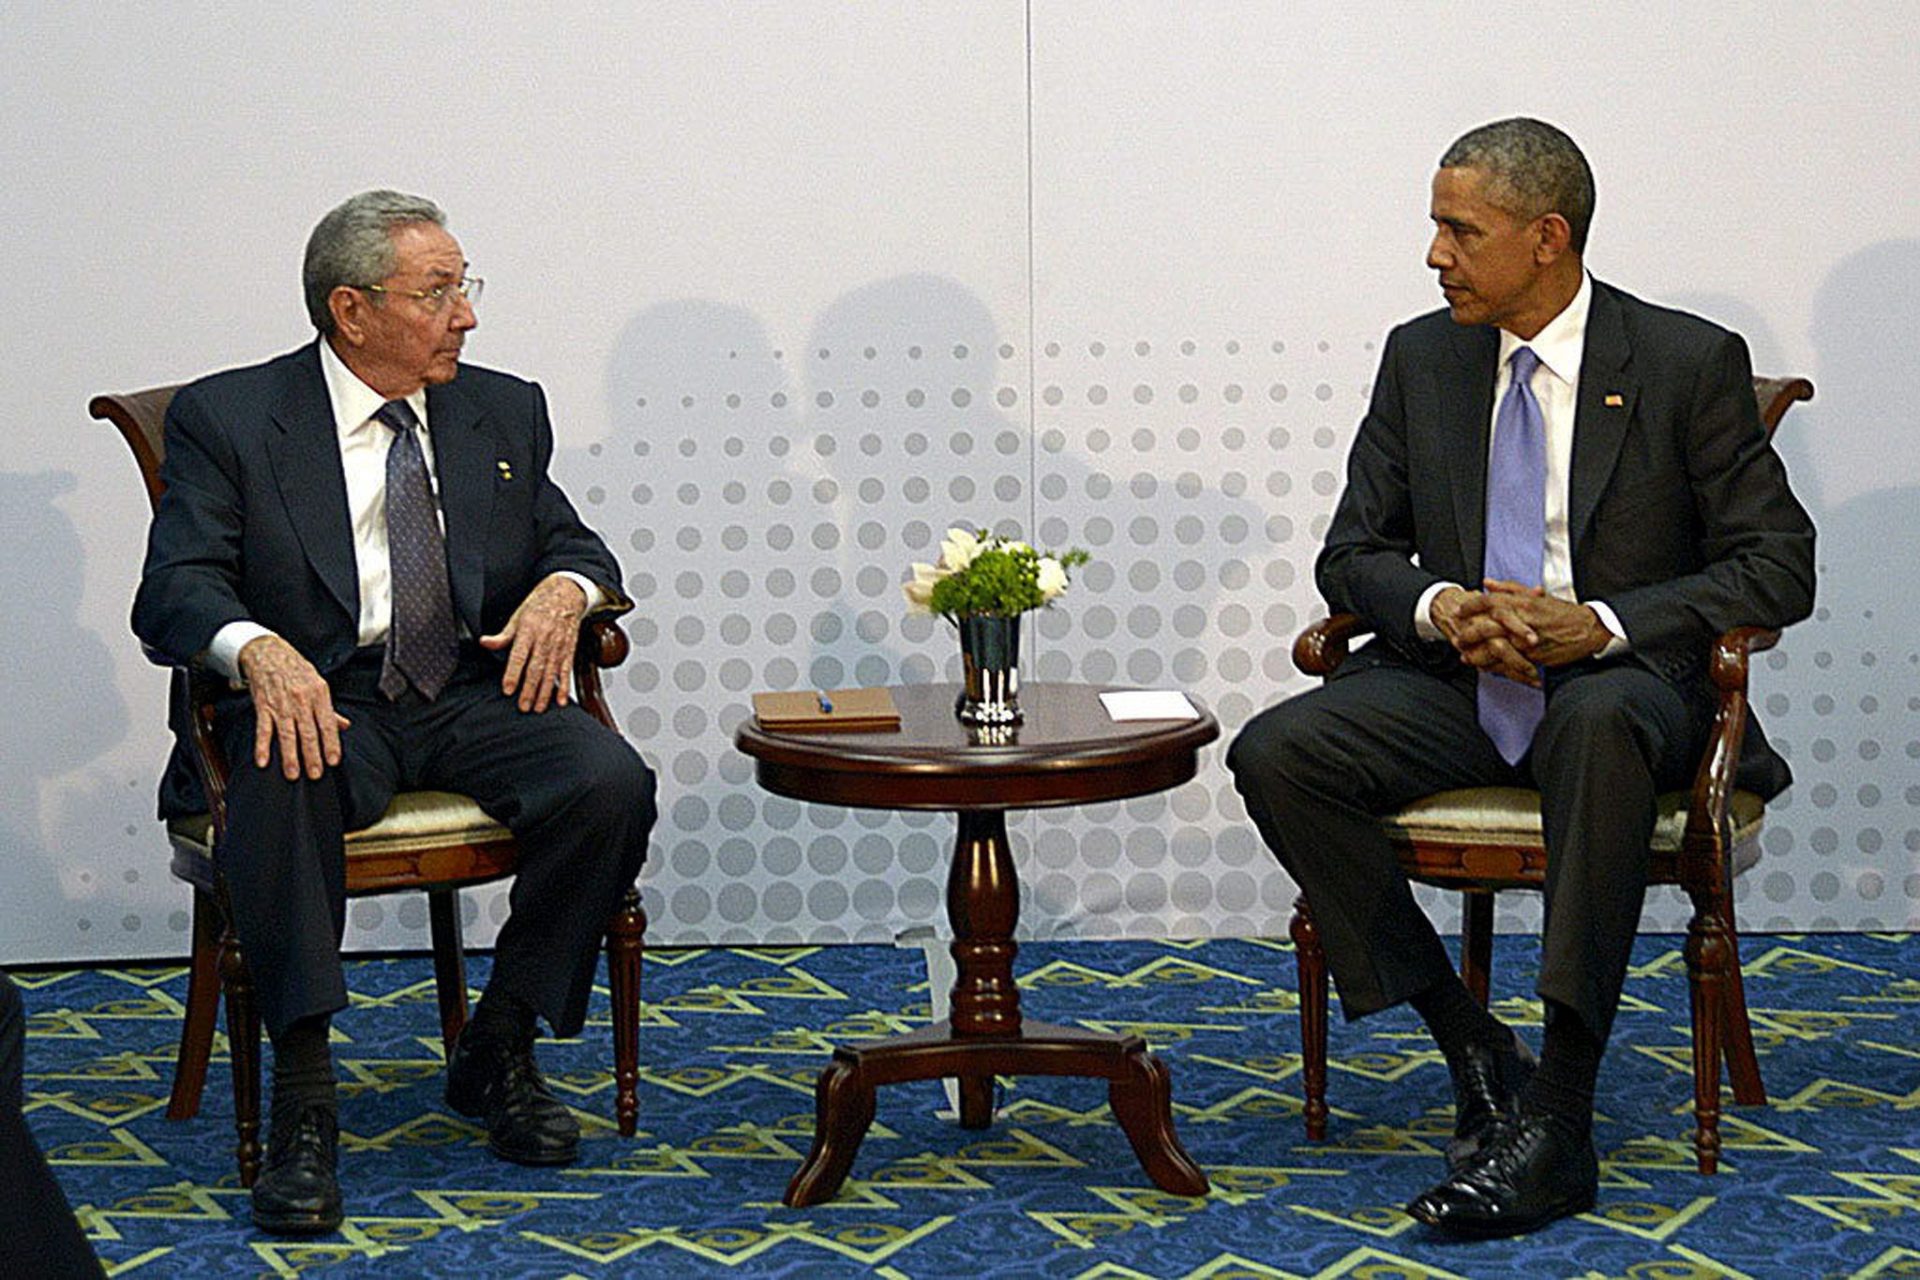 O encontro ‘histórico’ entre Obama e Castro